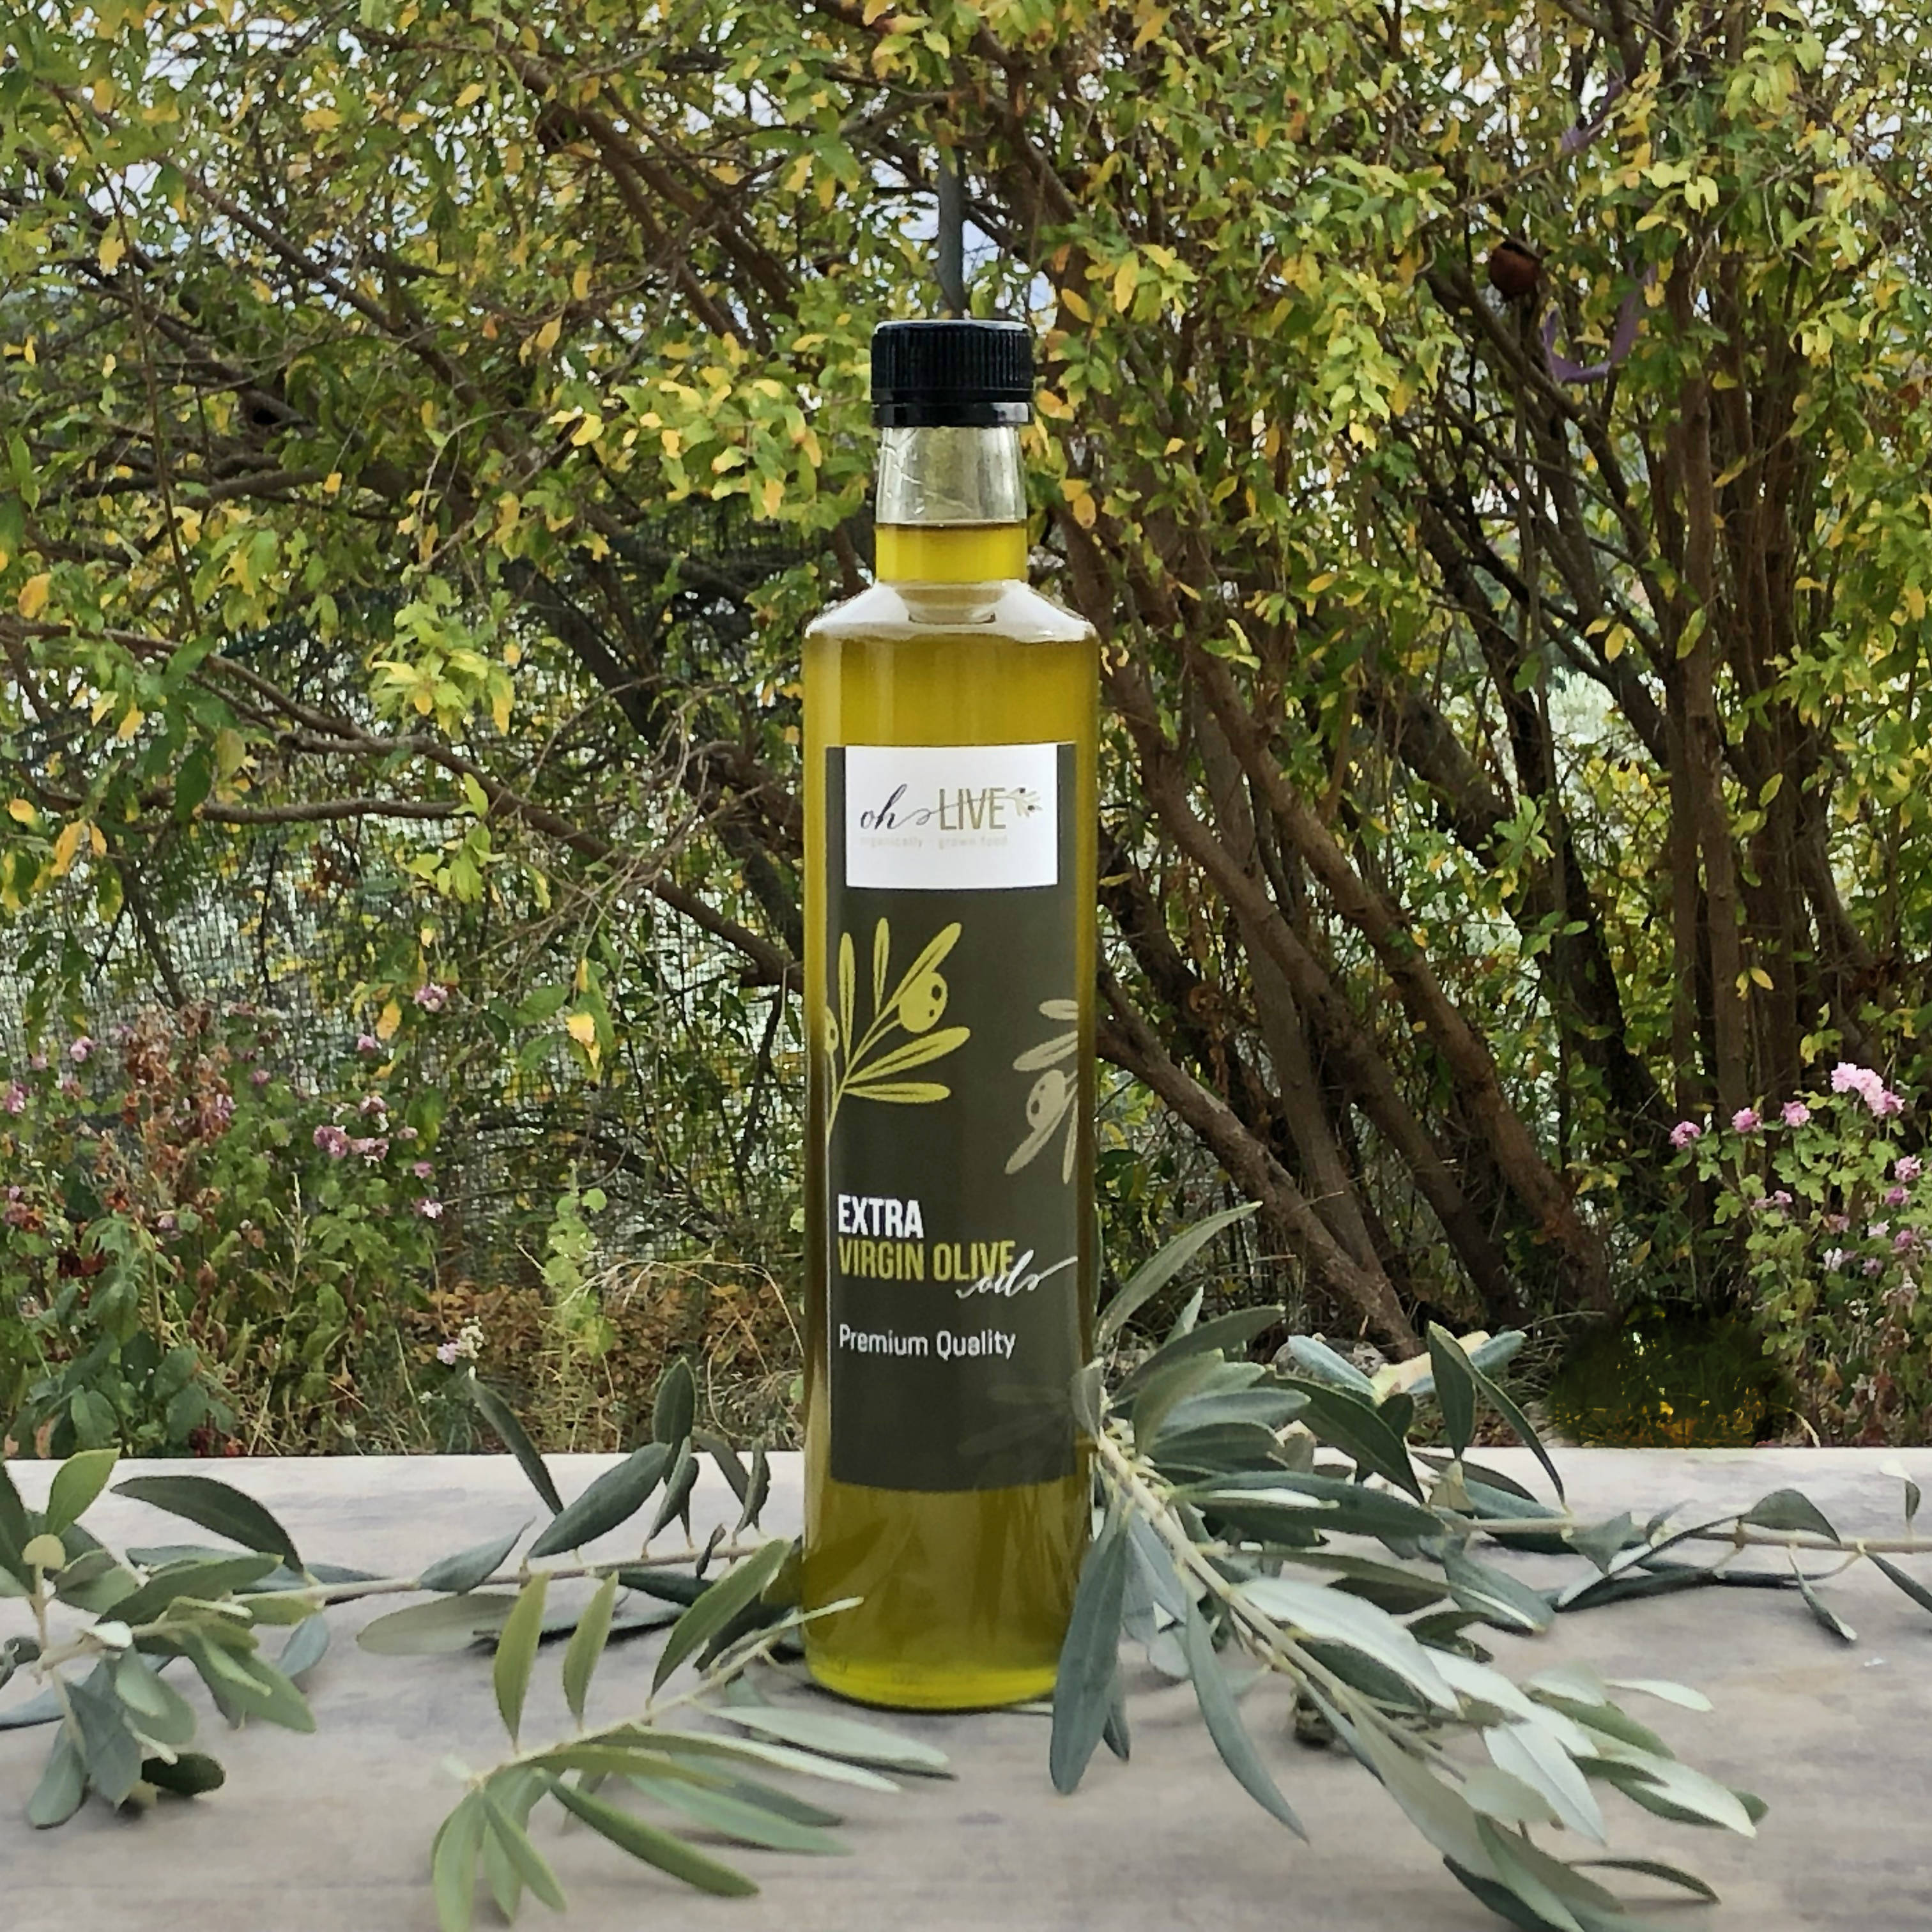 Ohlive Olive Oil